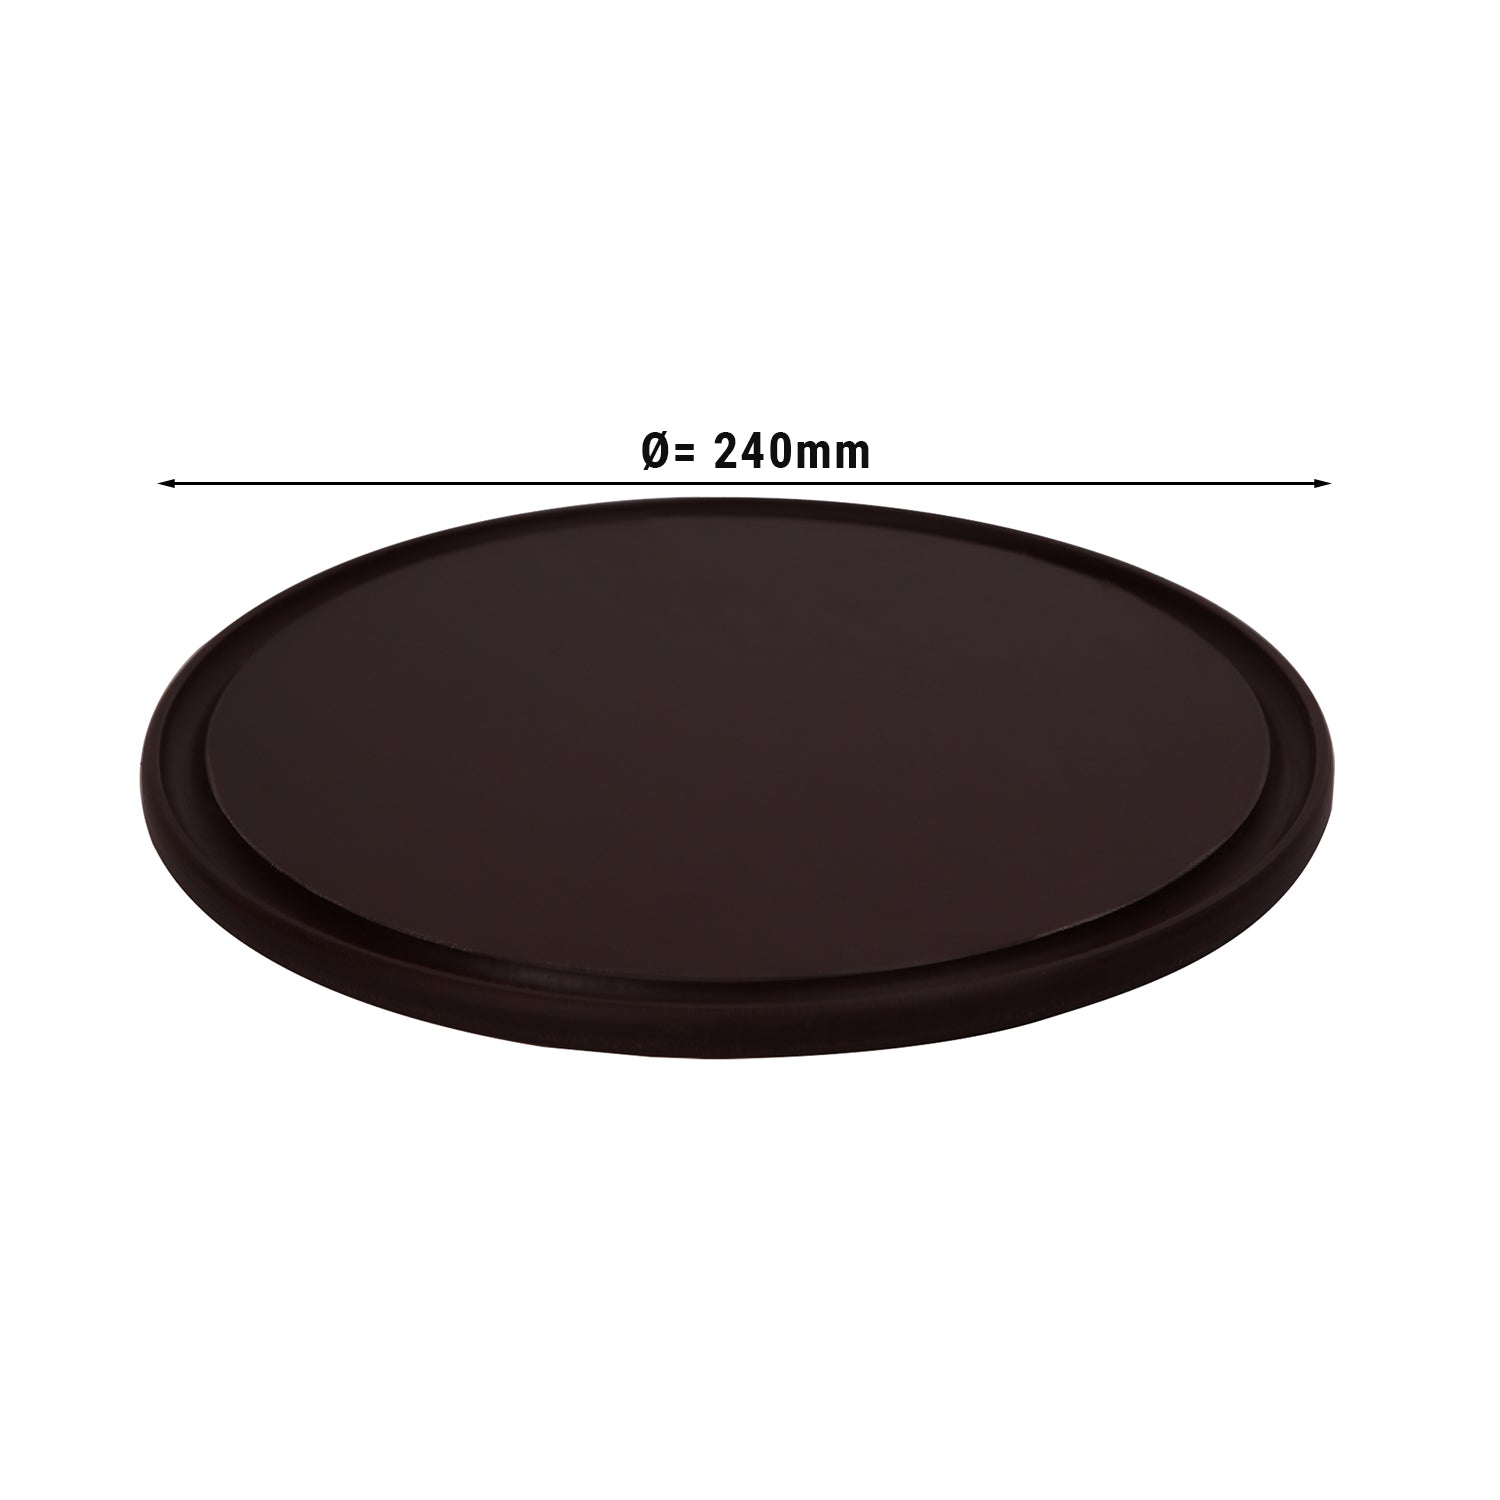 Pizzabakke - 24 cm i diameter